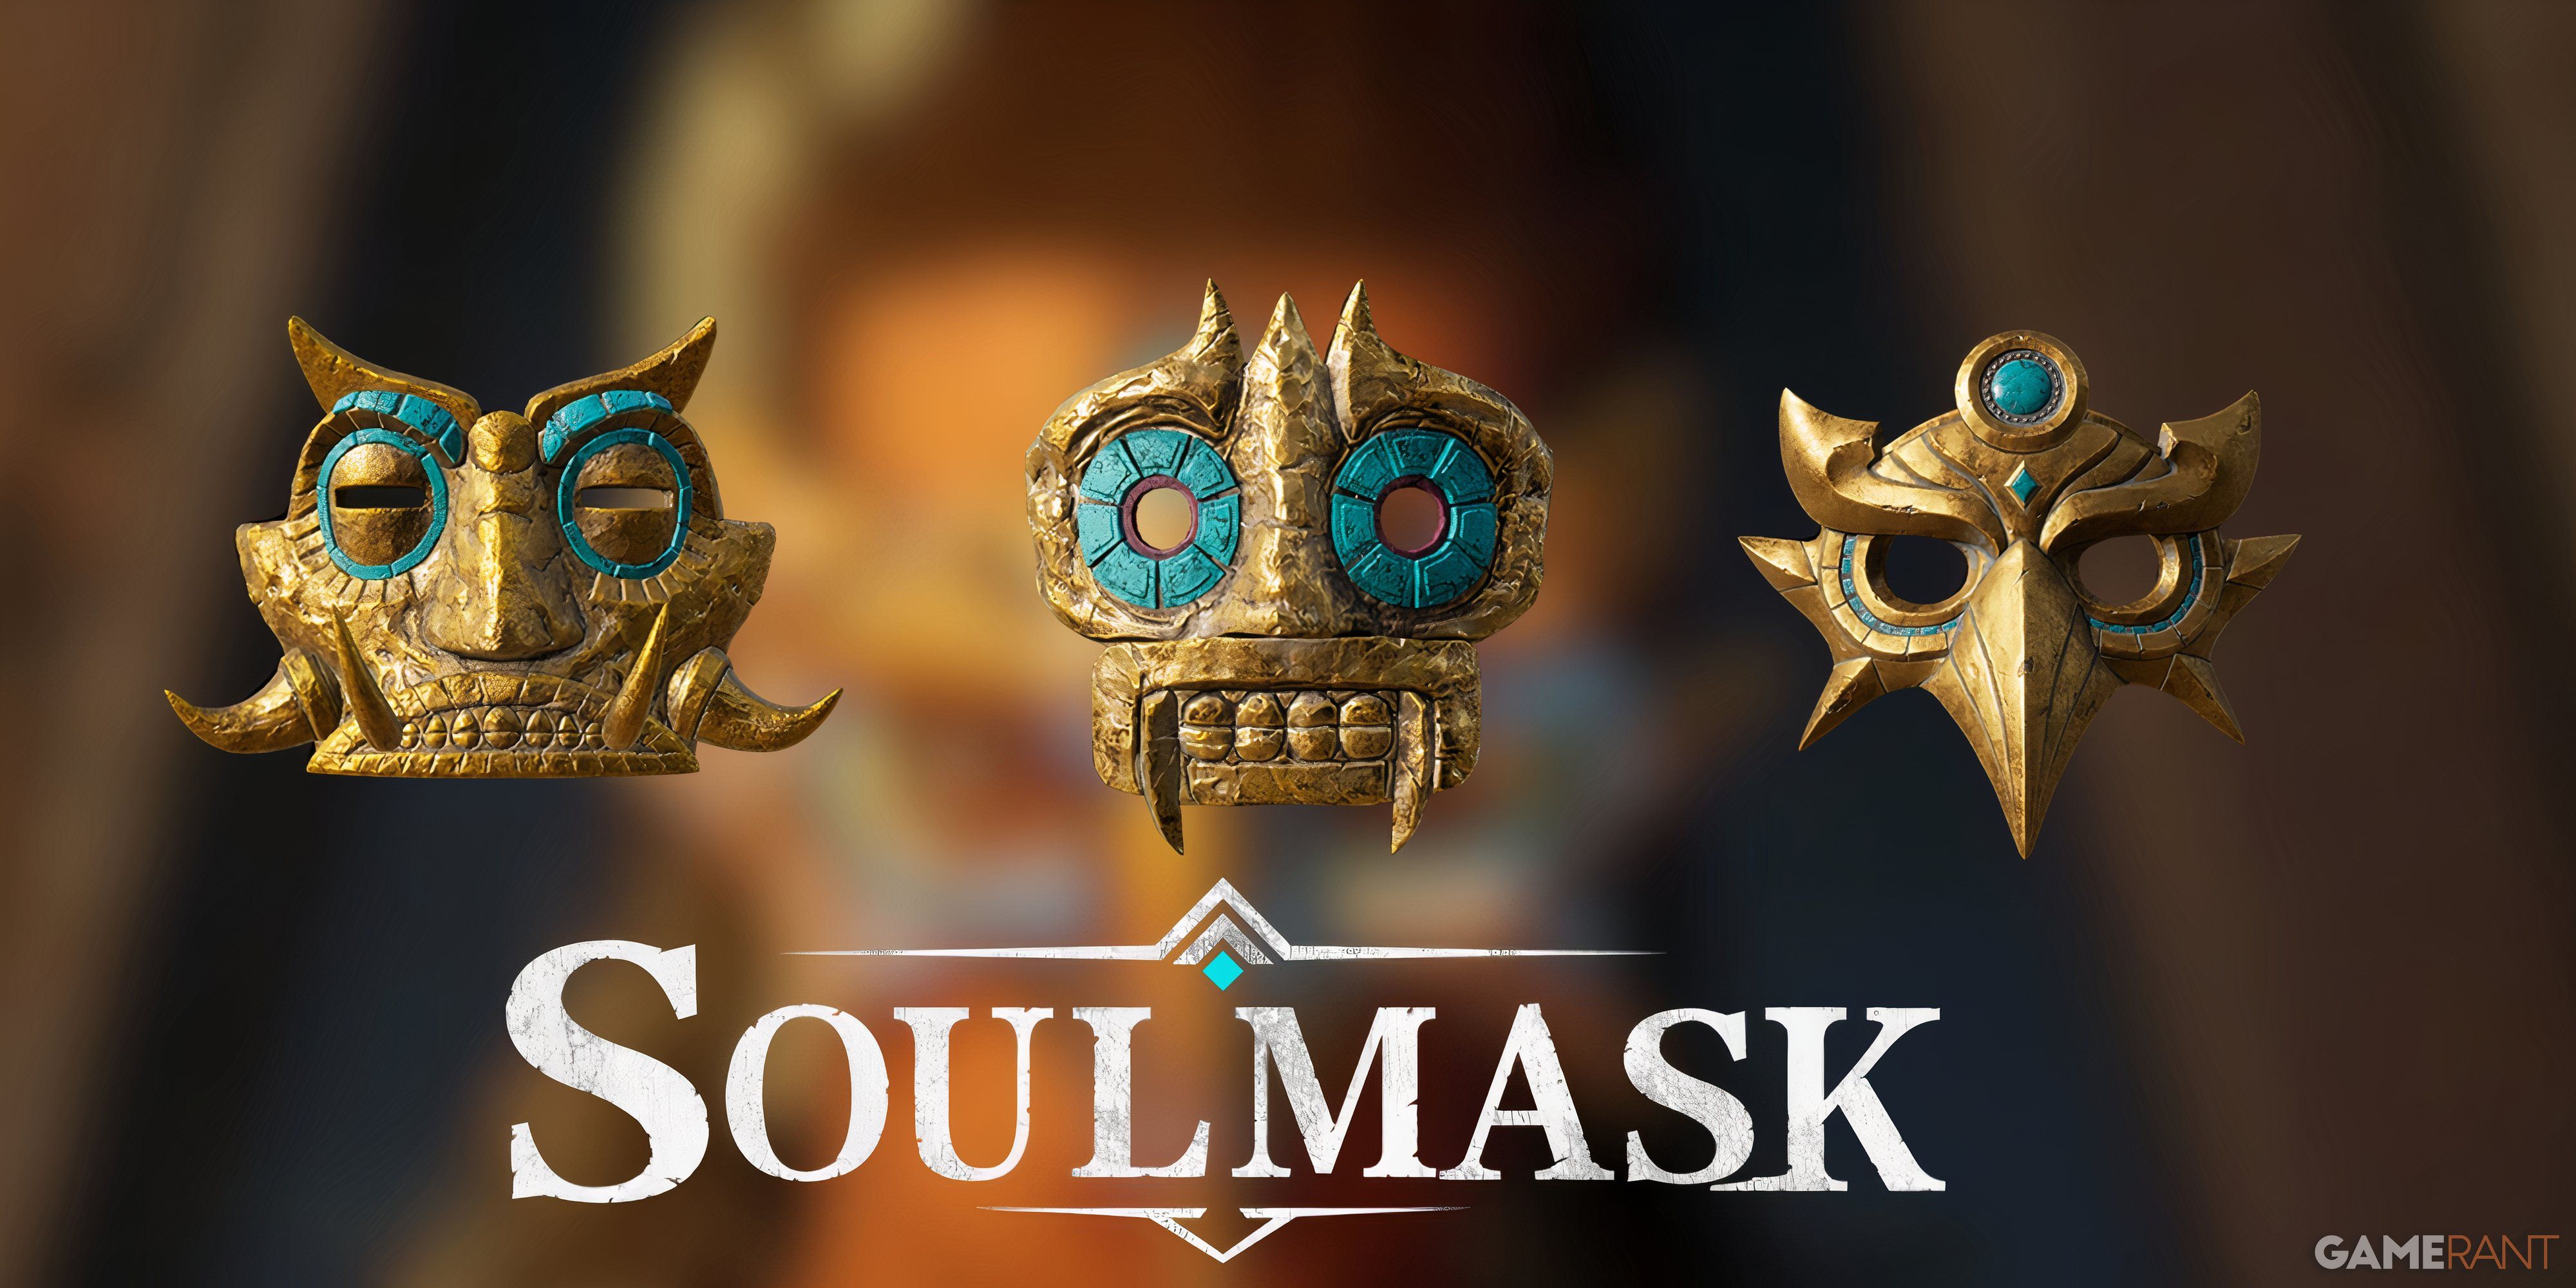 Soulmask - Starting Masks